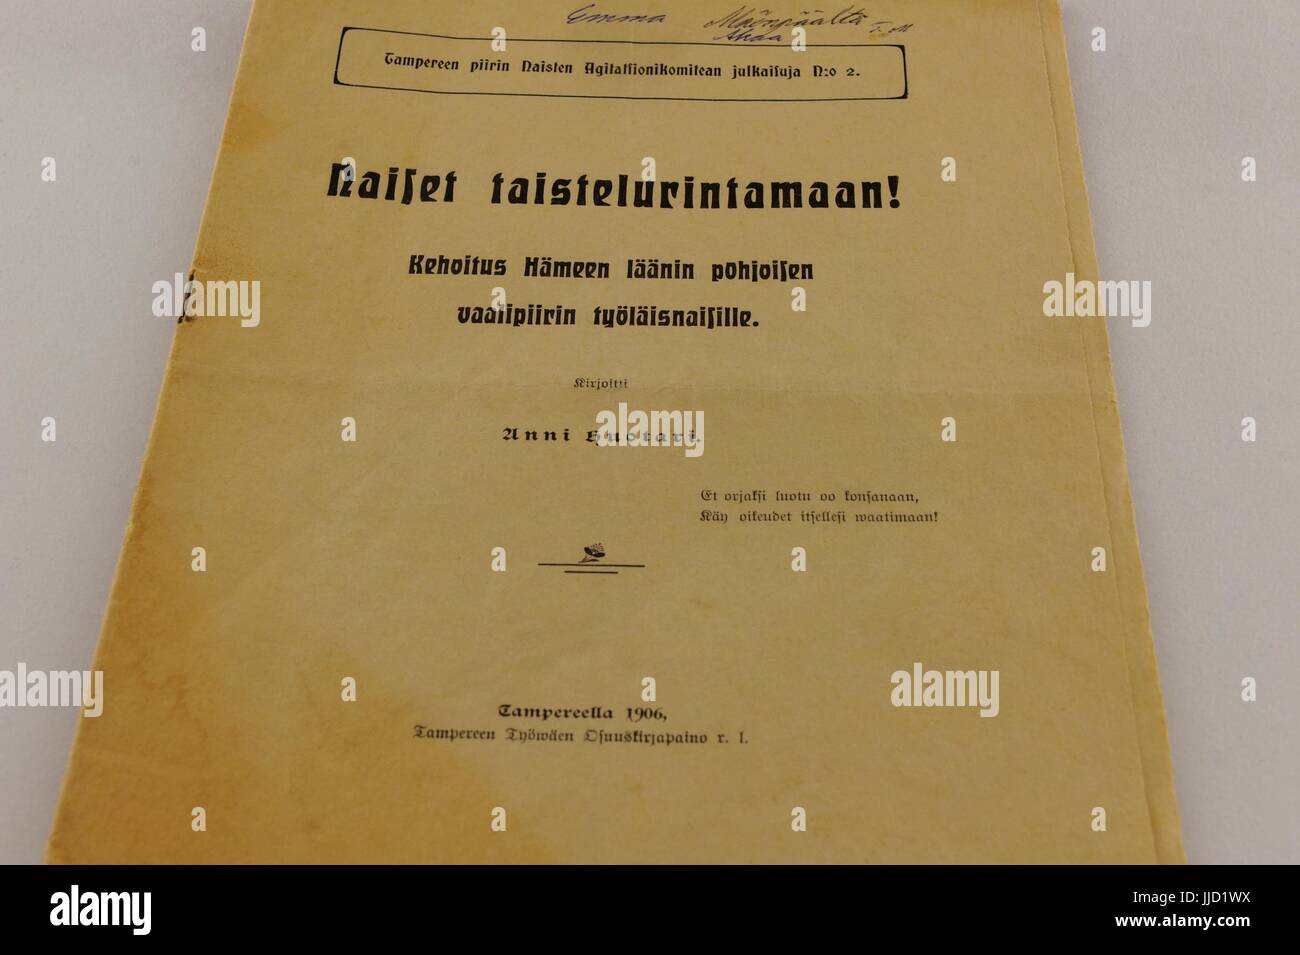 La situación de la política finlandesa iba a ser cambiado después de la huelga general de 1905. El derecho general a votar y la mujer también podrían ser candidatos Foto de stock